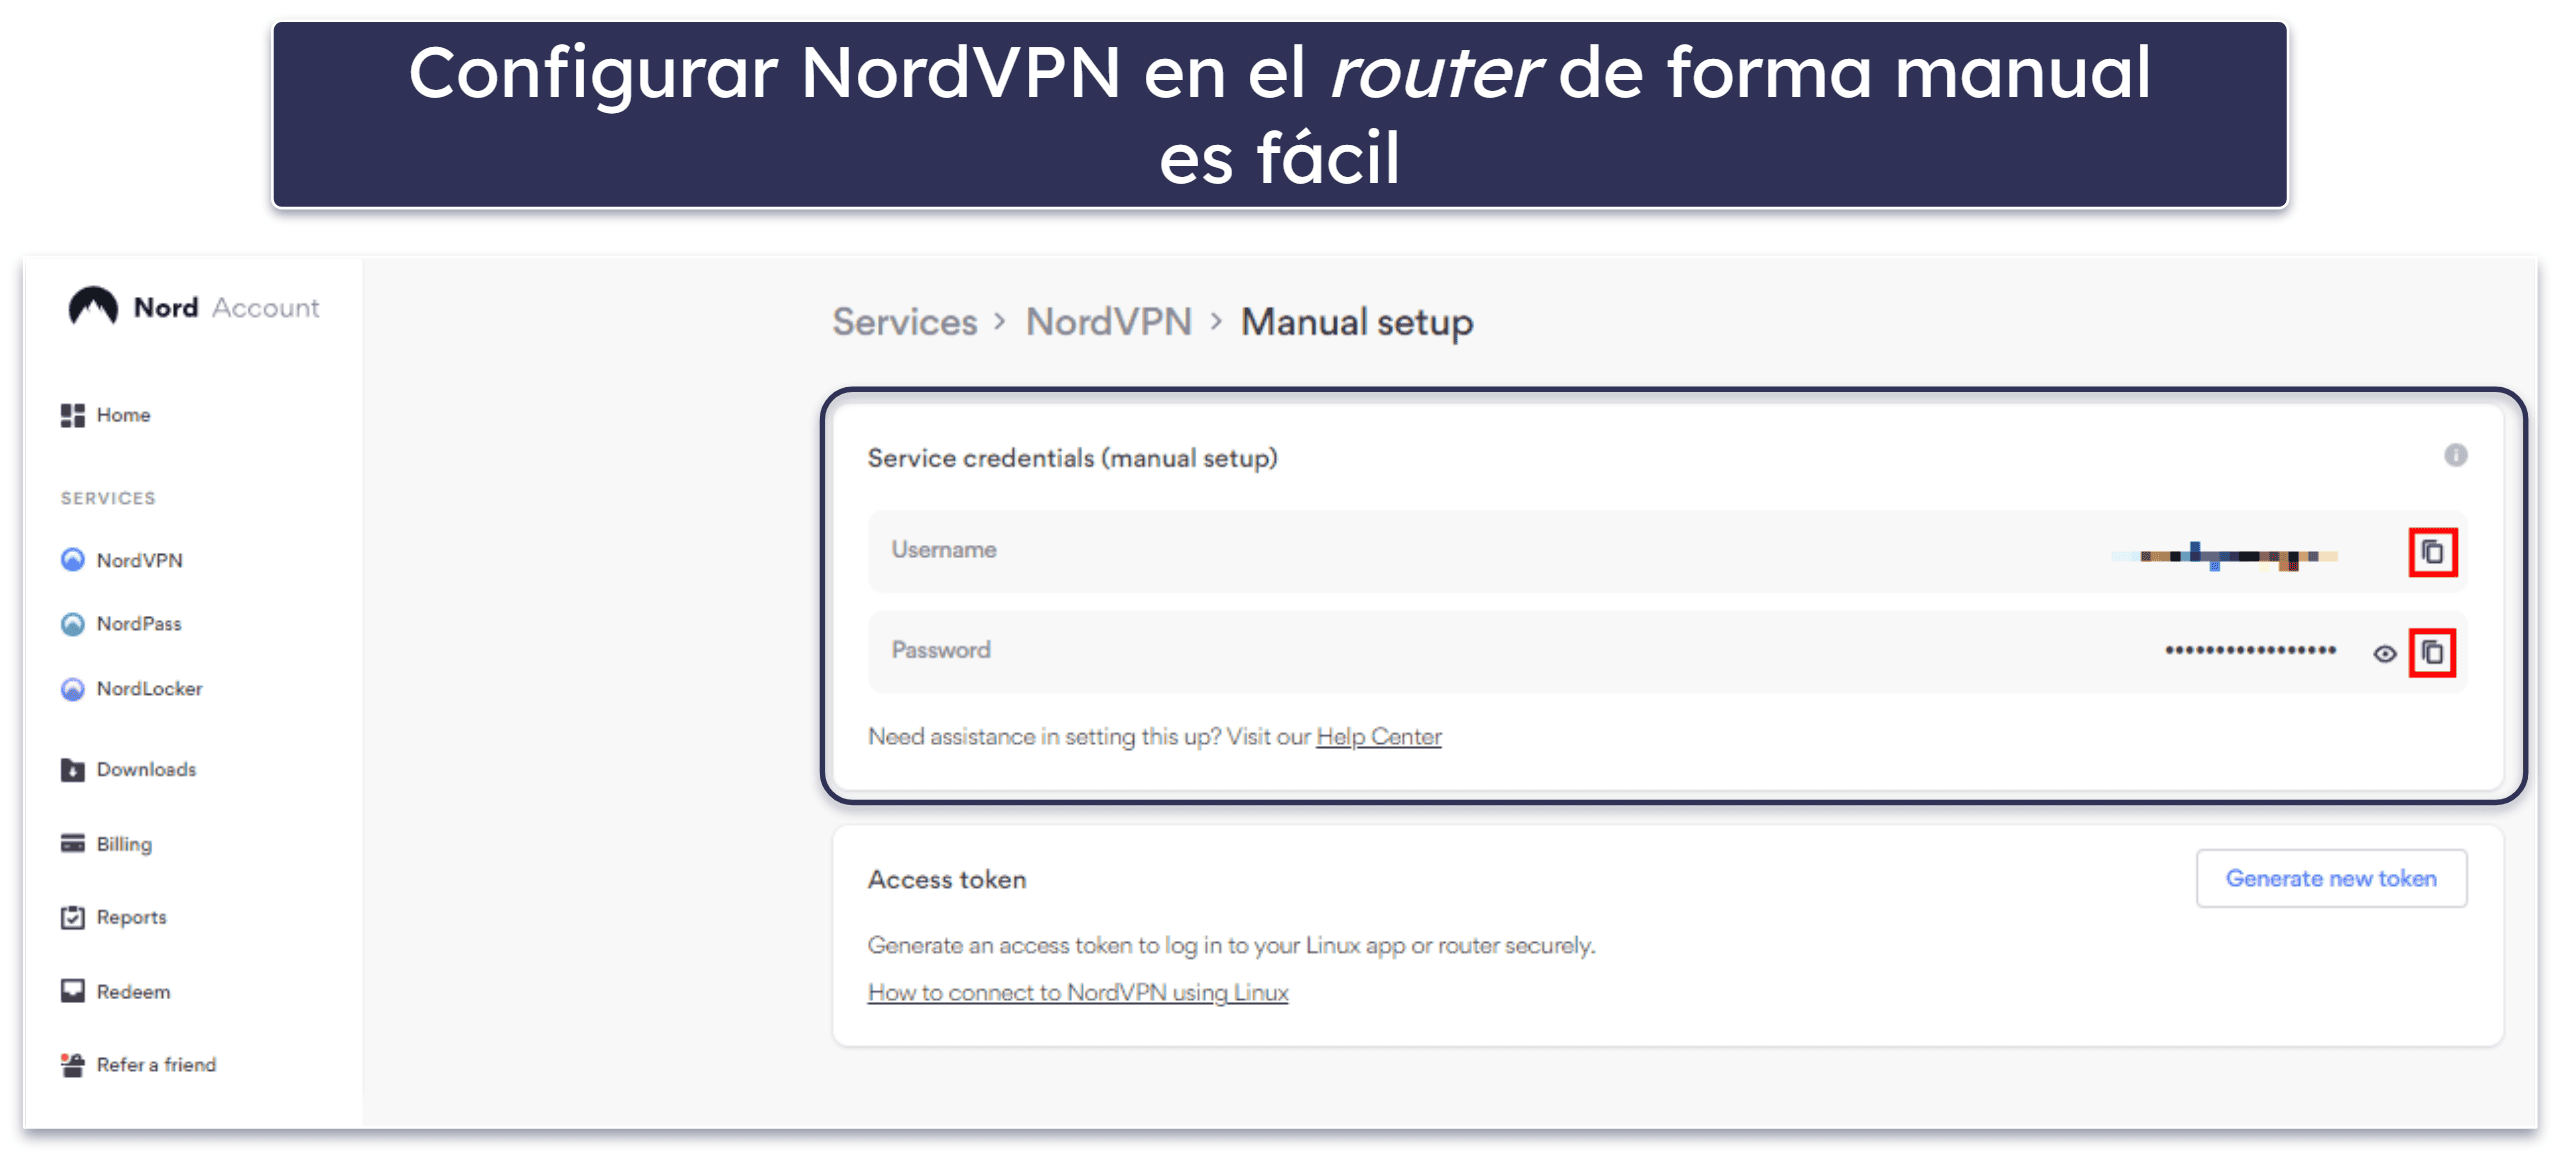 4. NordVPN: Ofrece una velocidad alta para ver streaming en Chromecast